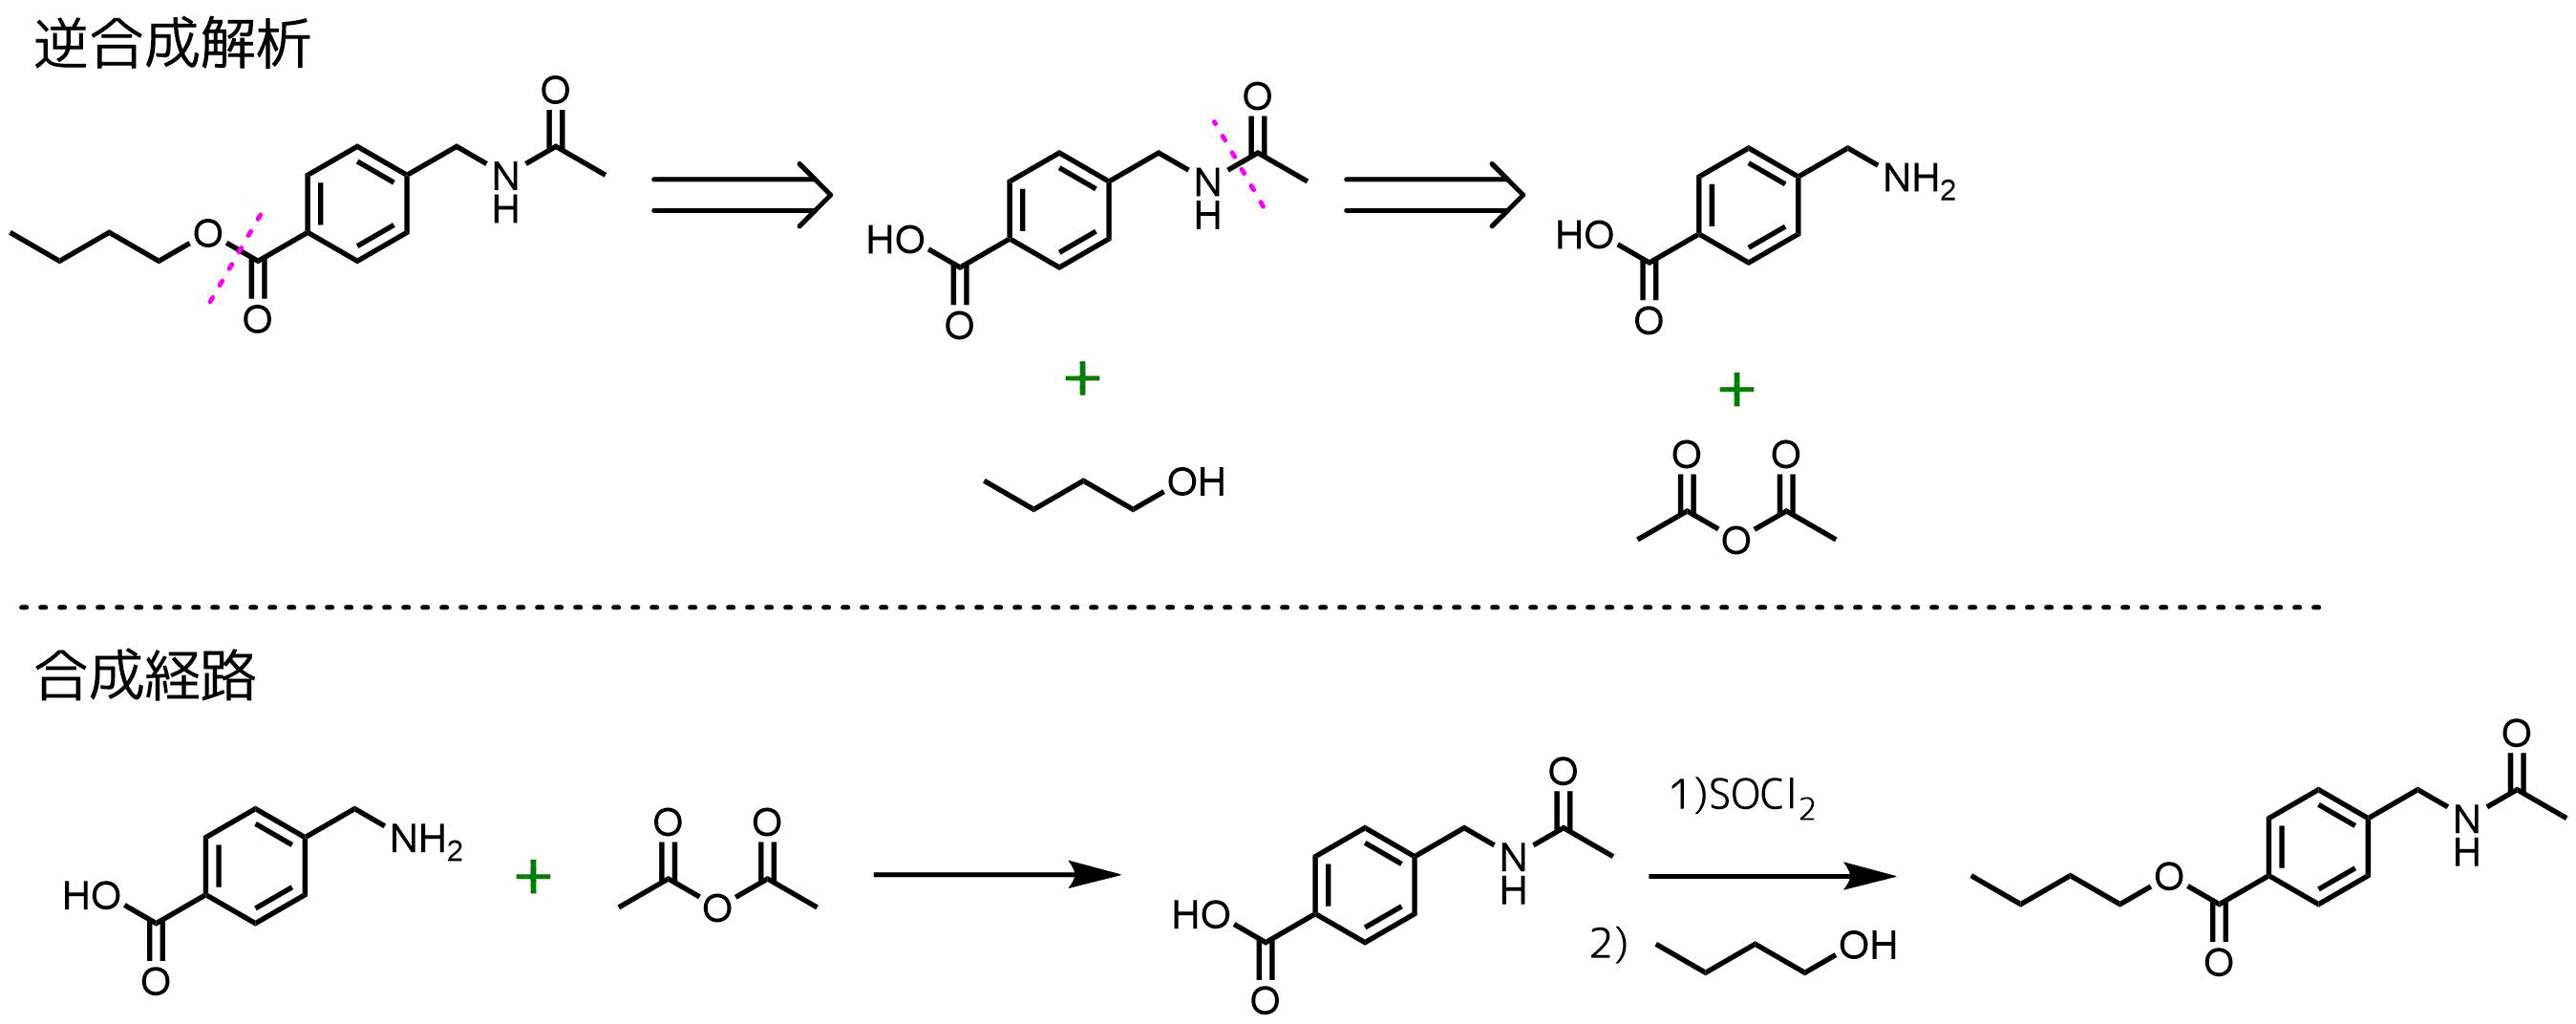 逆合成解析の例と合成経路の決定